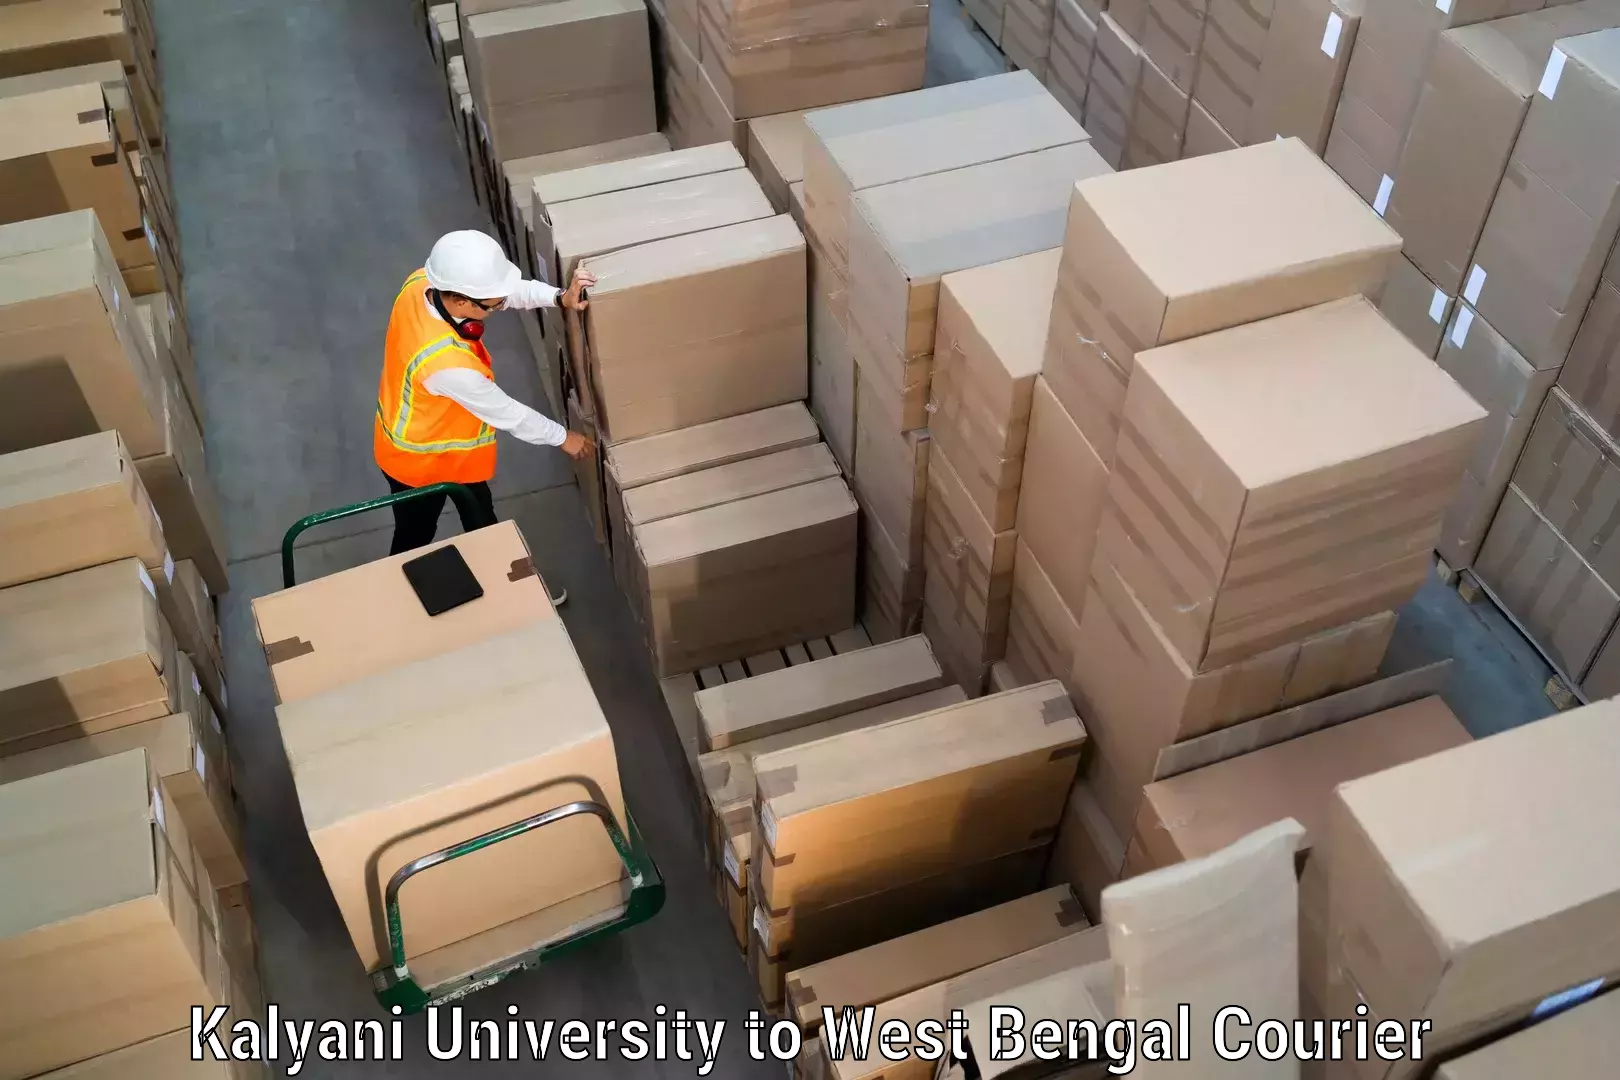 Courier service booking Kalyani University to Memari